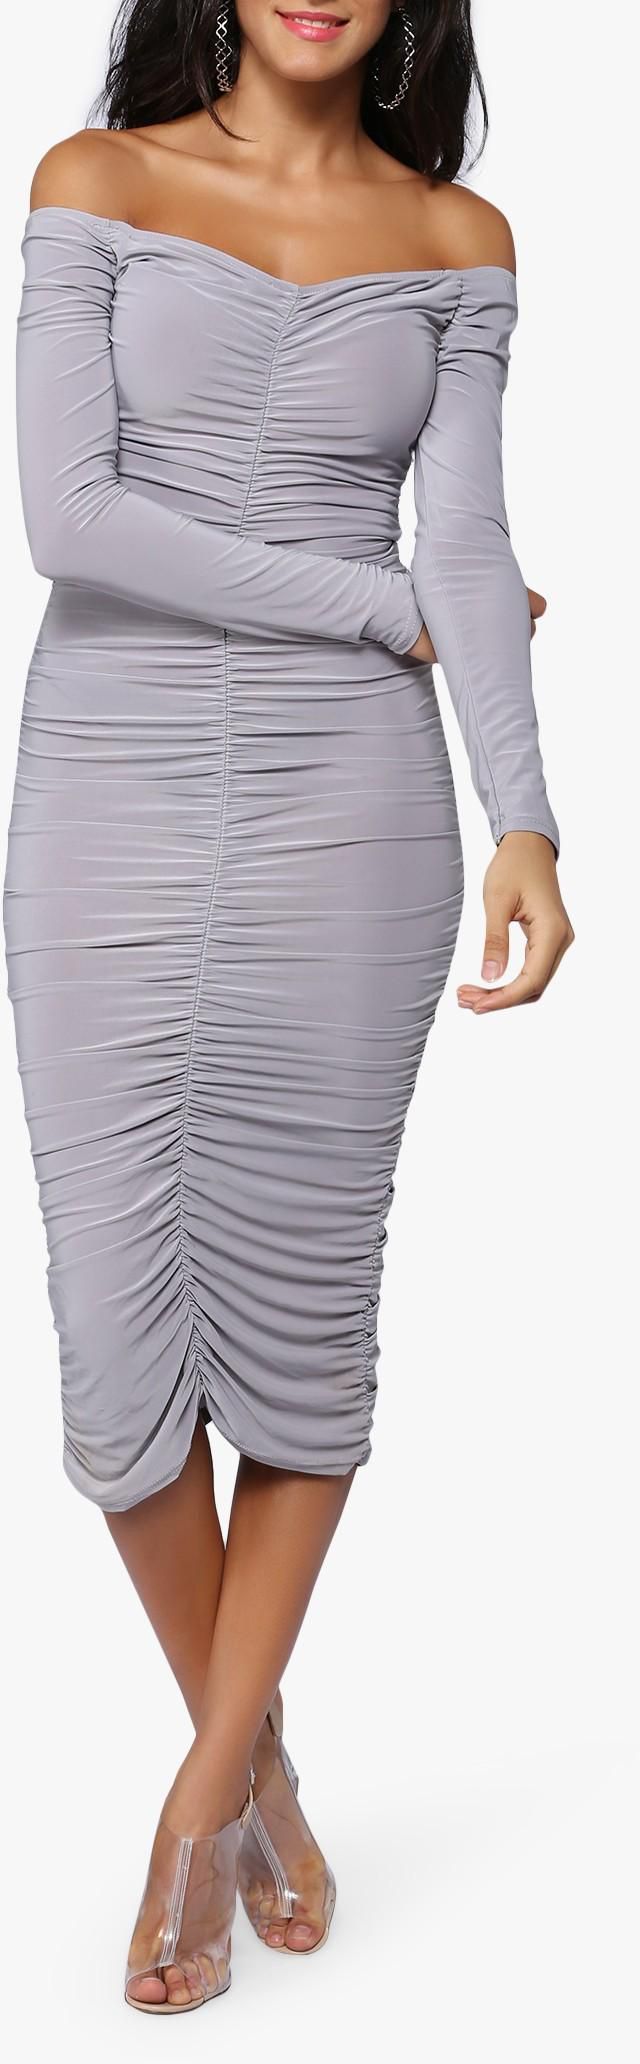 Grey Bardot Ruched Dress